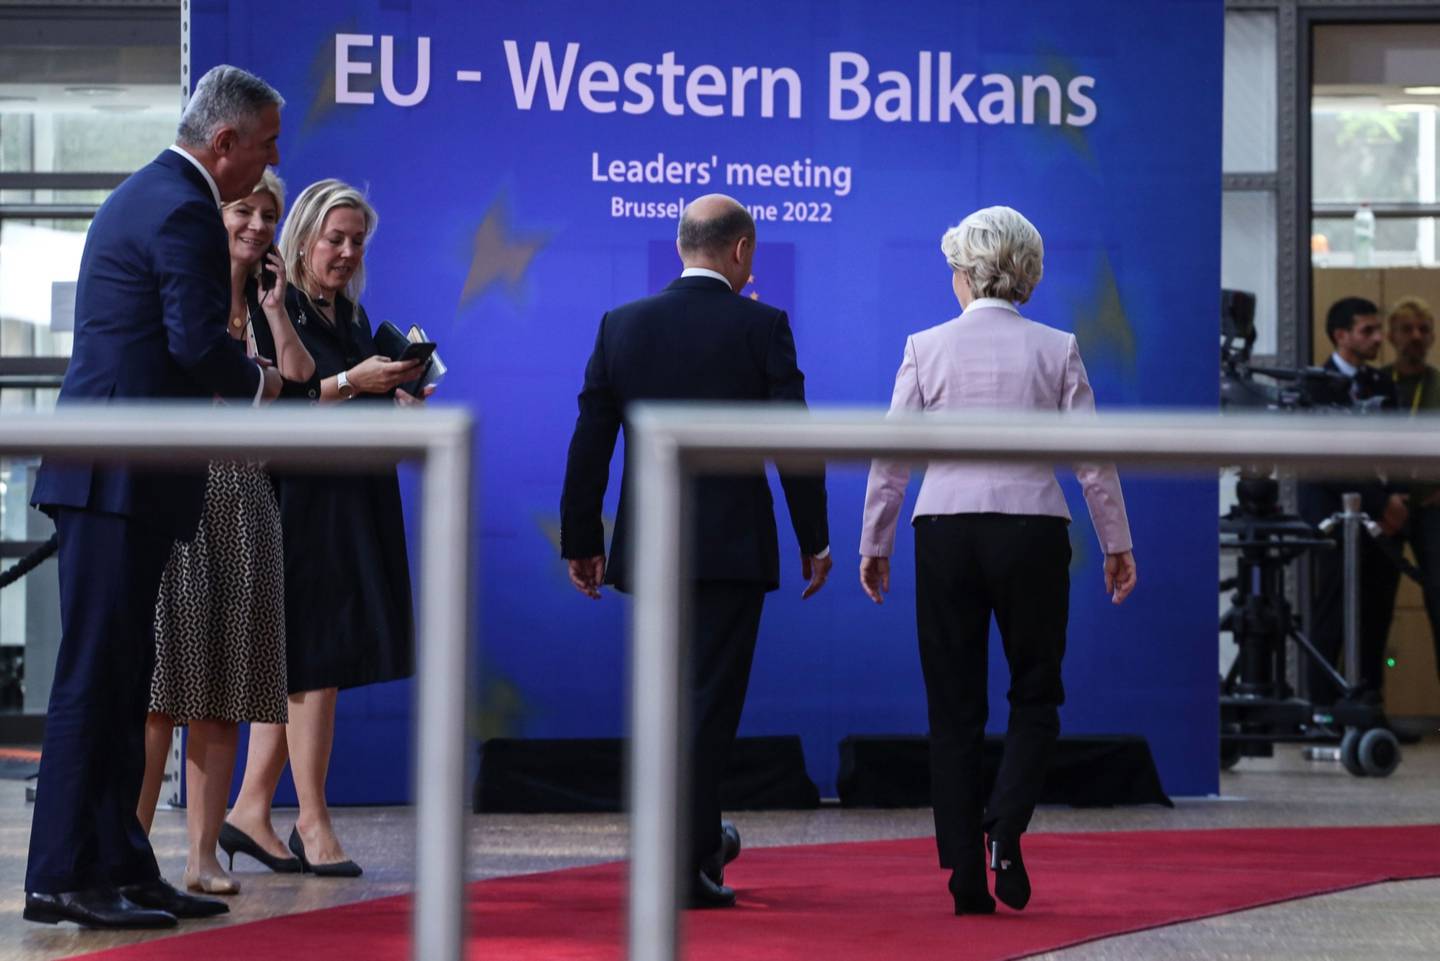 Olaf Scholz, canciller alemán, centro izquierda, y Ursula von der Leyen, presidenta de la Comisión Europea, centro derecha, en la cumbre de líderes de la Unión Europea (UE) y los Balcanes Occidentales en la sede del Consejo Europeo en Bruselas, Bélgica, el jueves 23 de junio de 2022.  Fotógrafo: Valeria Mongelli/Bloomberg